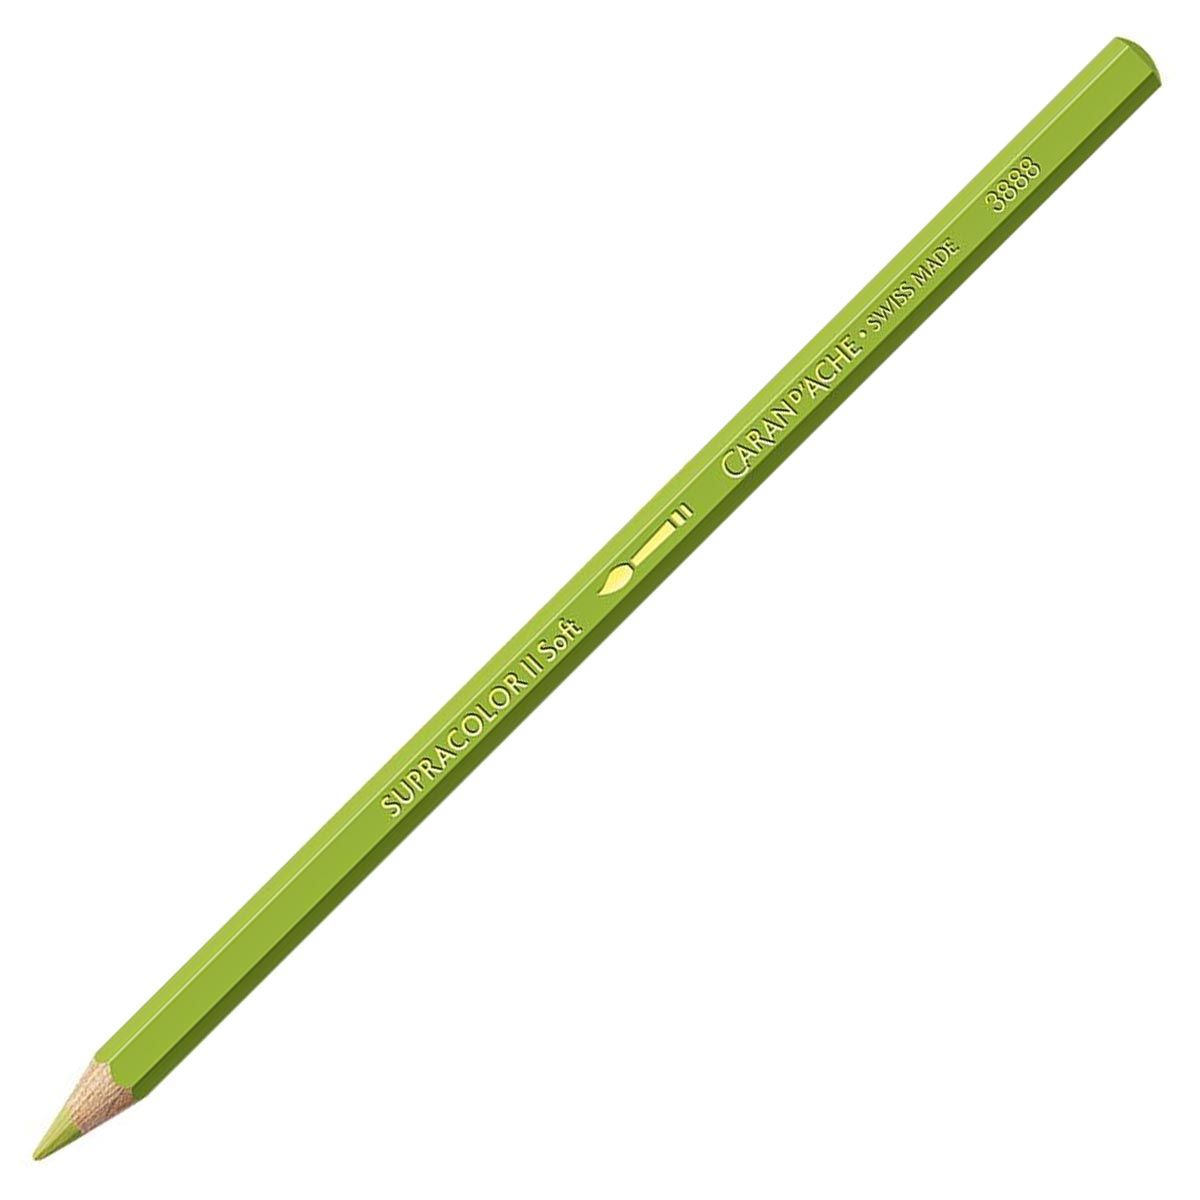 Caran d'Ache Supracolor ll Soft Aquarelle Pencil - Light Olive 245